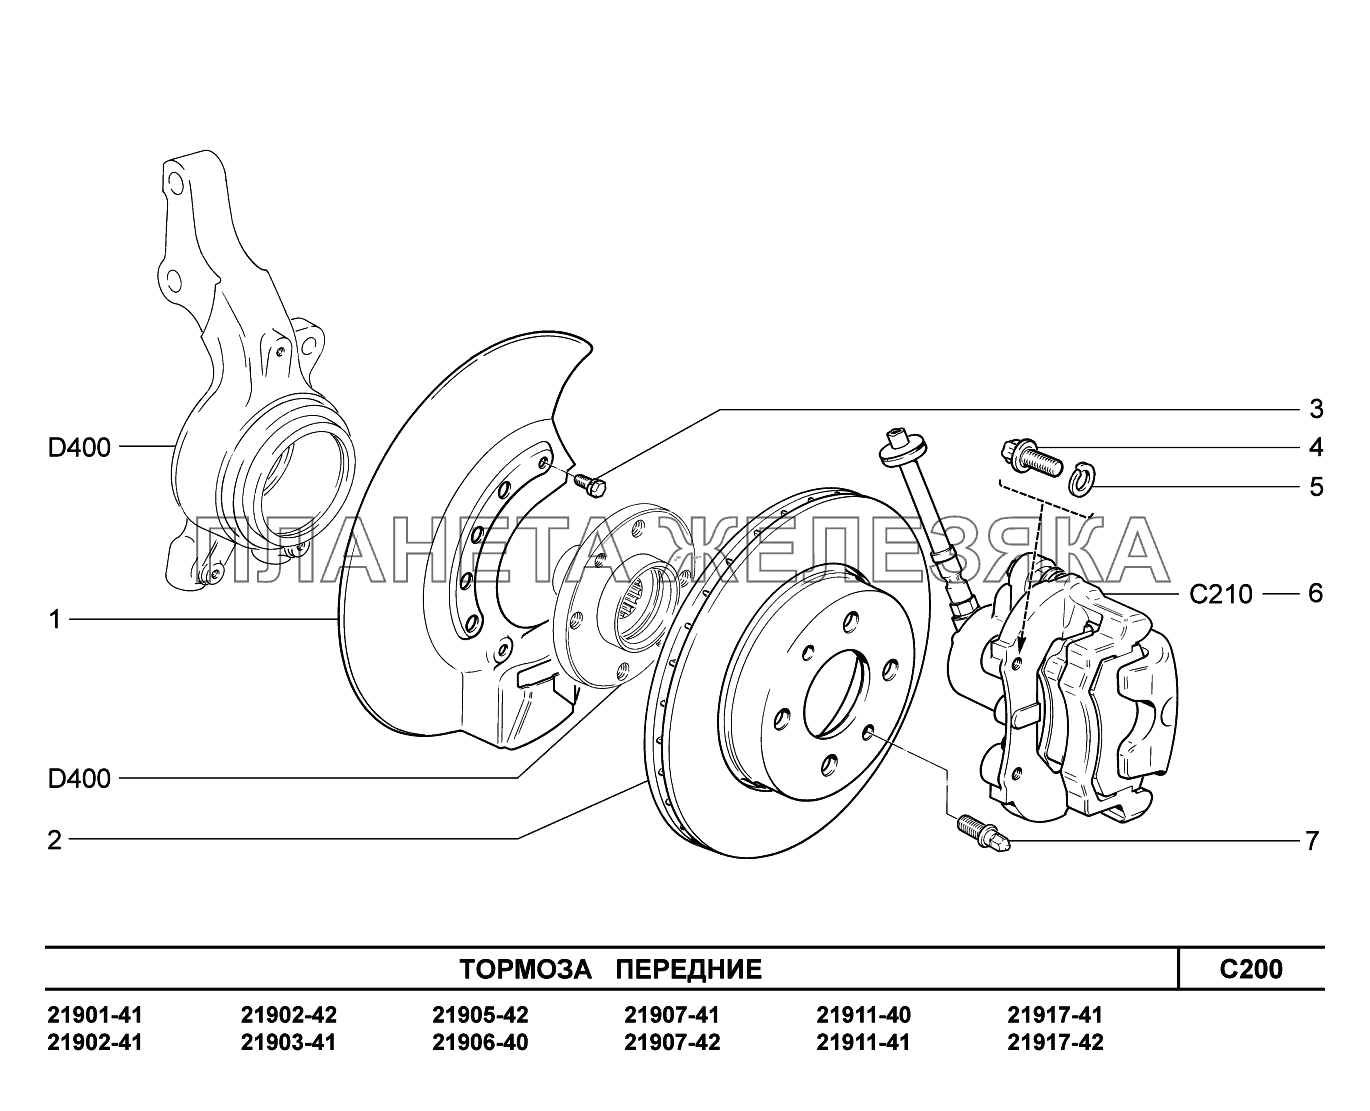 Тормозные диски на гранту фл. Тормозной механизм переднего колеса ВАЗ 1118. Передняя тормозная система ВАЗ 2190.